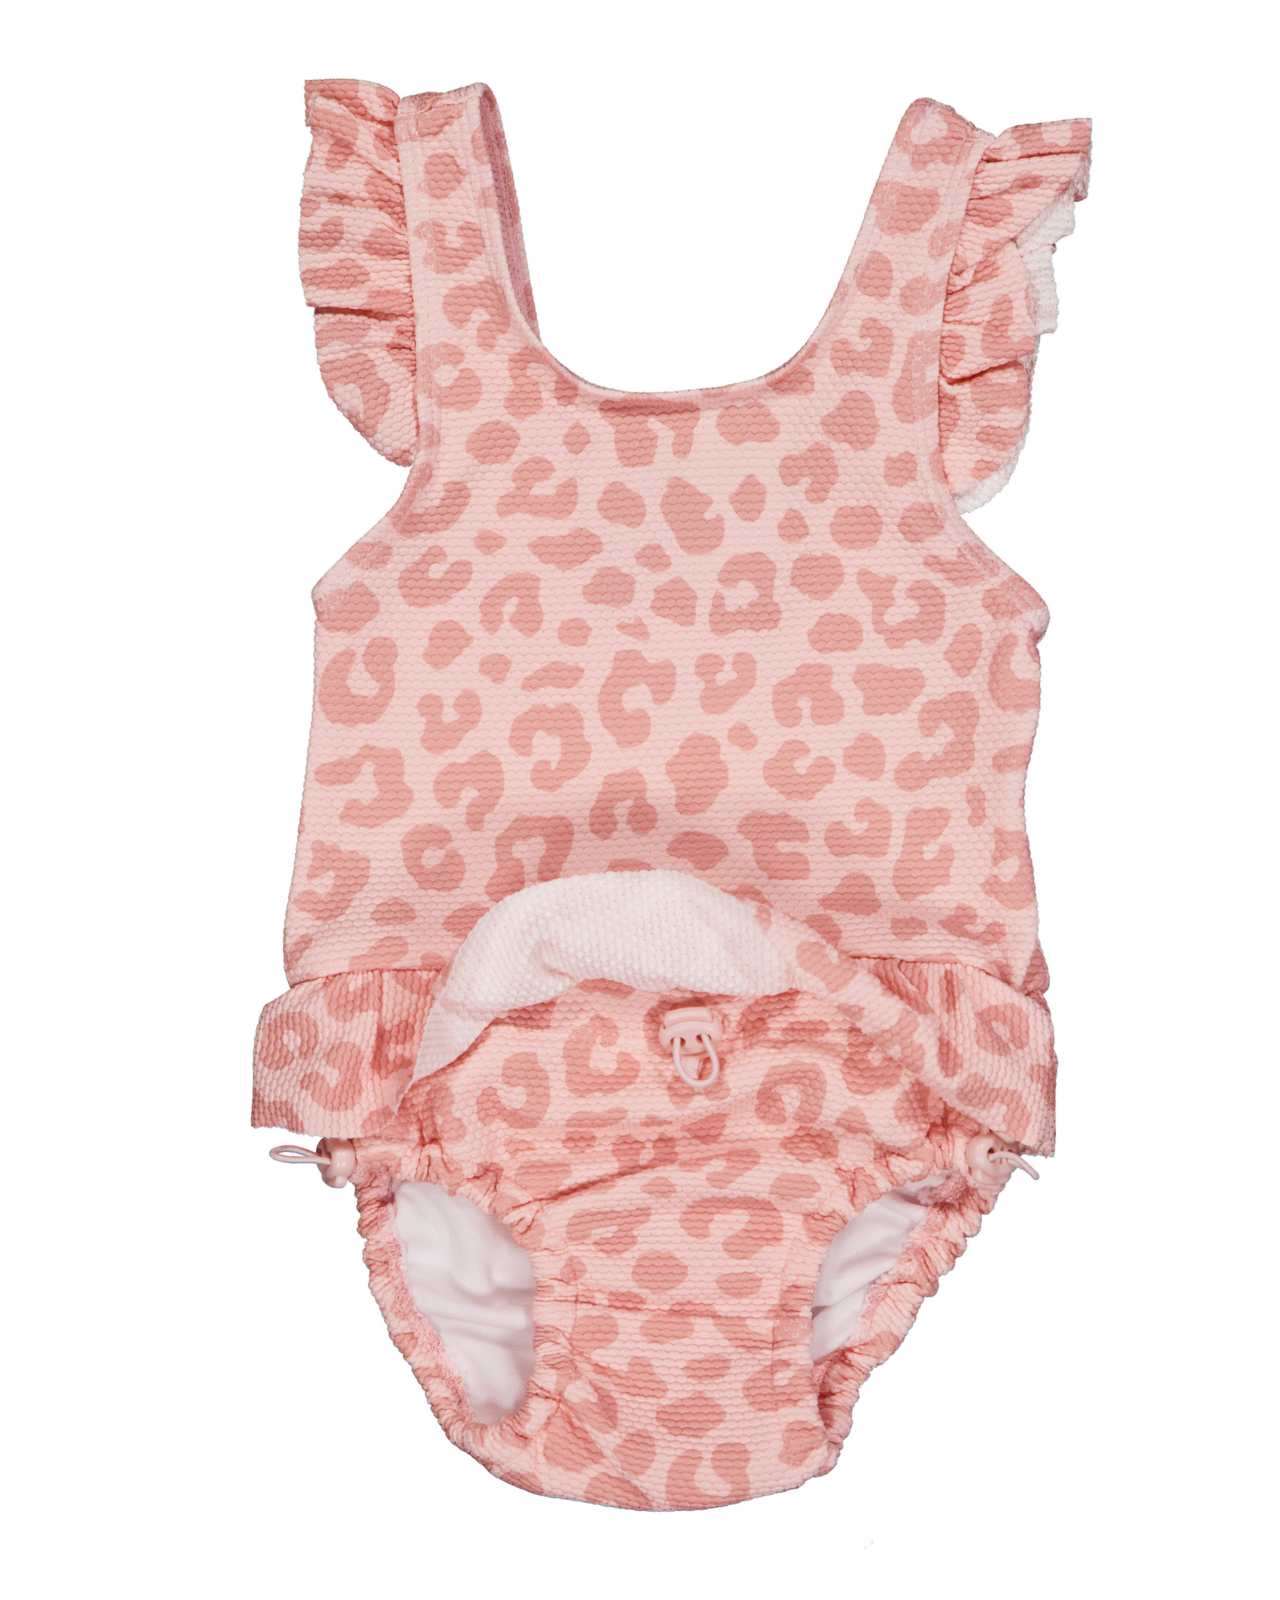 UV Baby swim suit Pink Leo  50/56